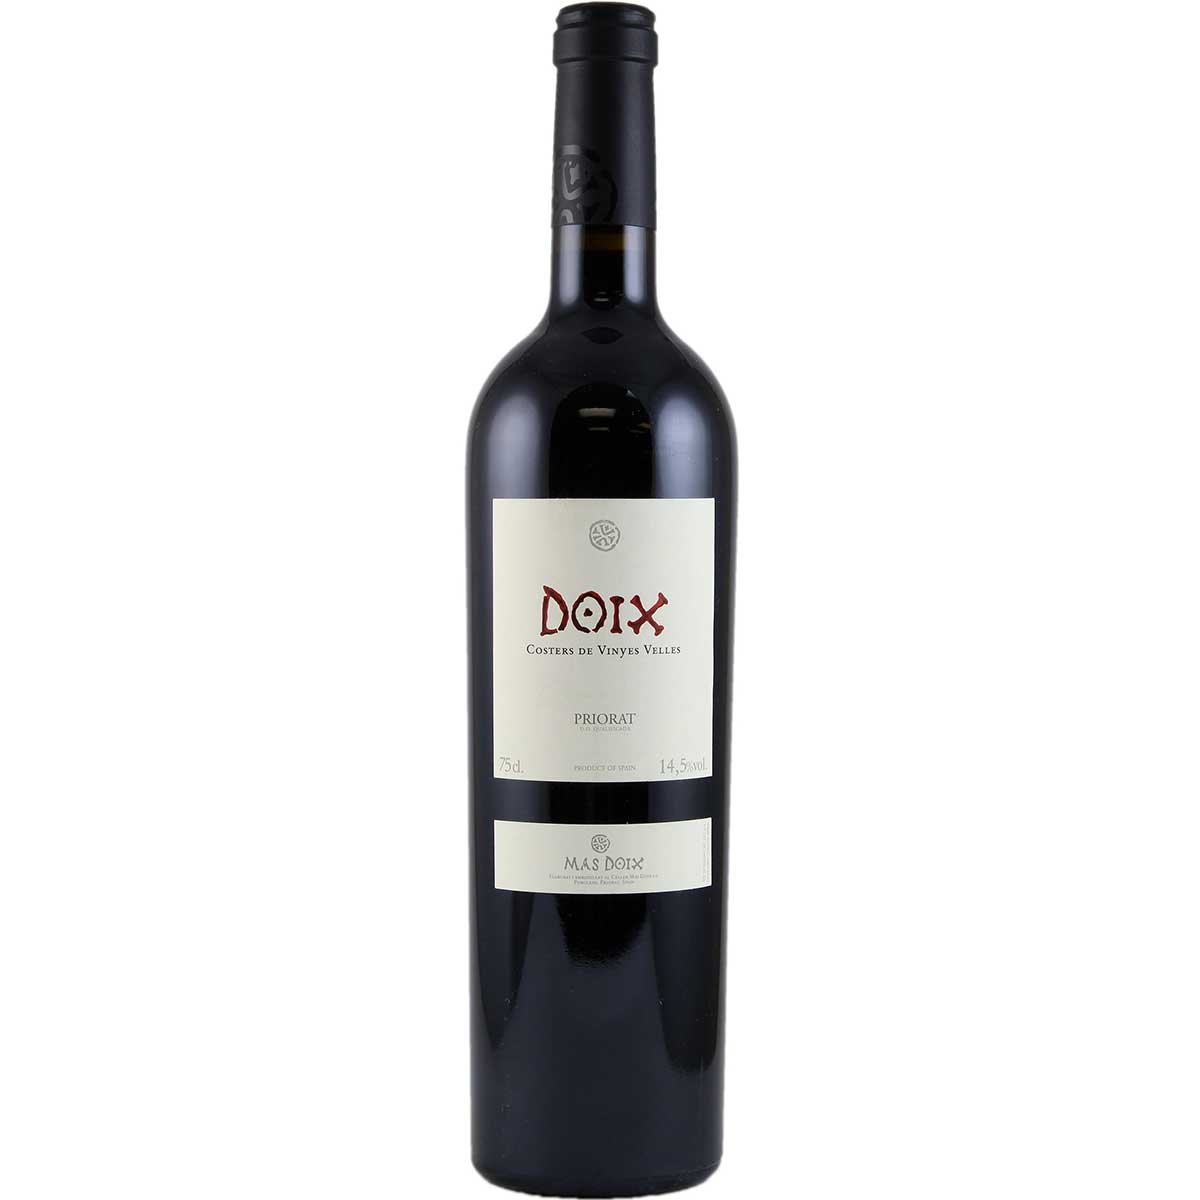 Buy Mas Doix Costers de Vinyes Velles at Wines Online Singapore